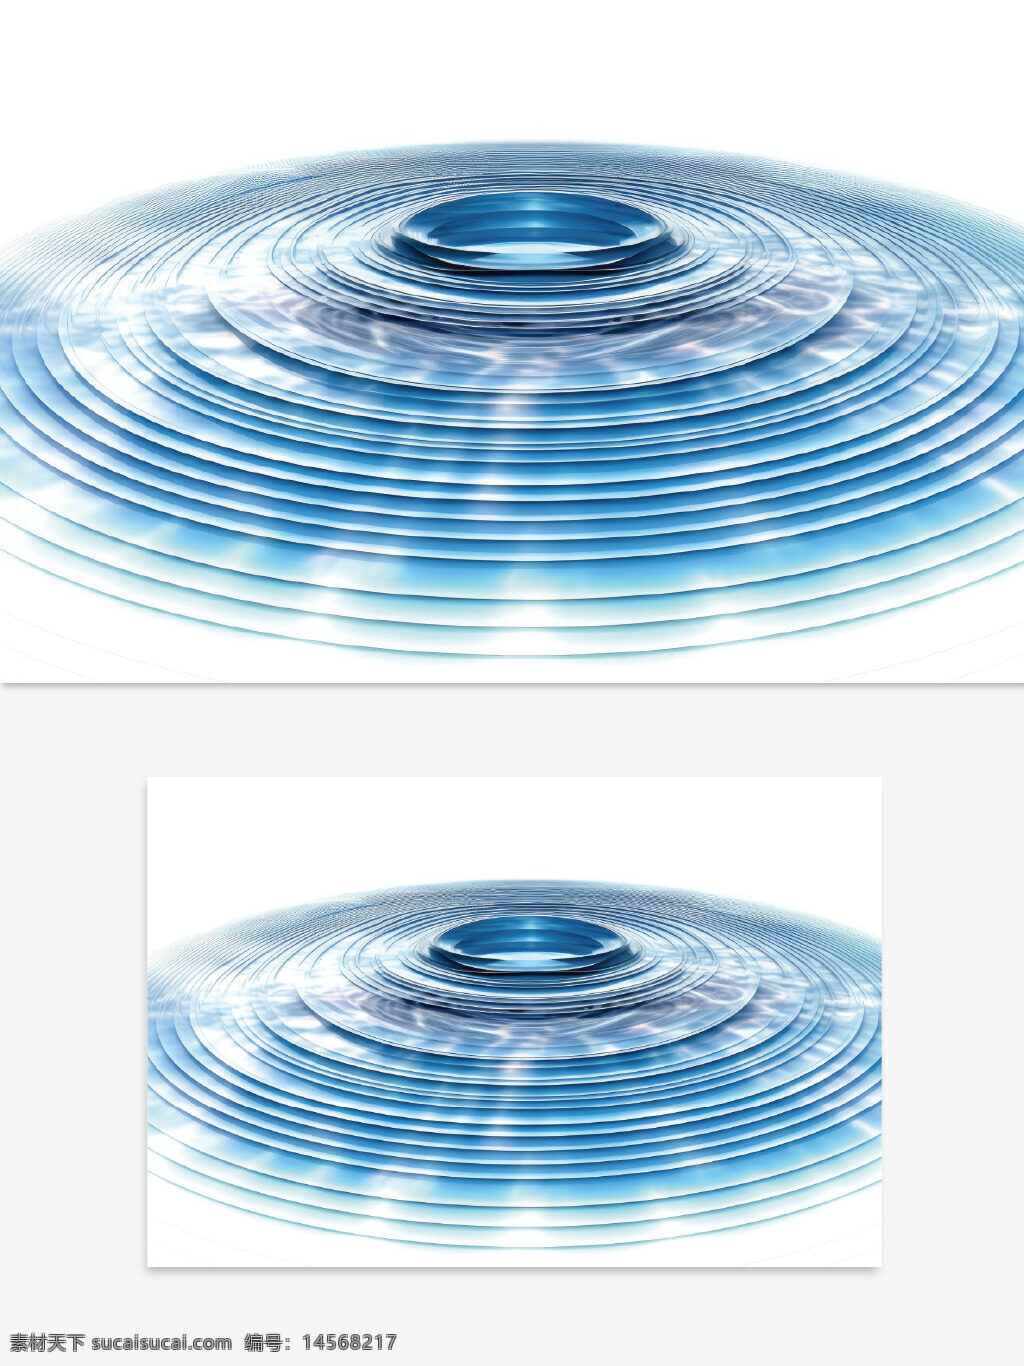 大气蓝色水滴漩涡背景 蓝色水滴 科技kv 科技创意 大气背景 干净背景 h5背景